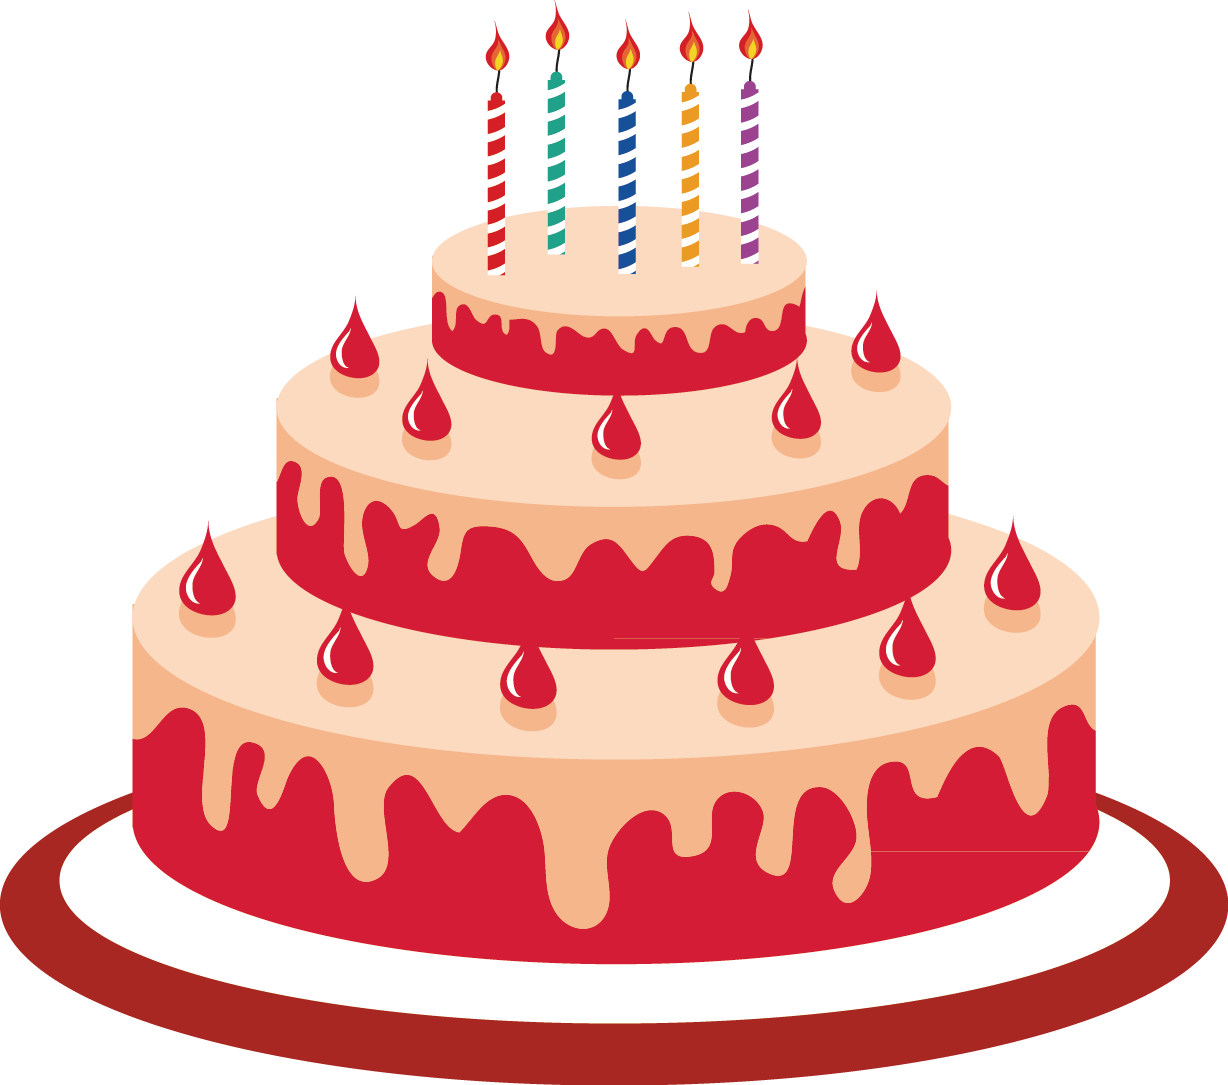 Birthday cake Cartoon - cake png download - 1228*1085 - Free Transparent  Birthday Cake png Download. - Clip Art Library